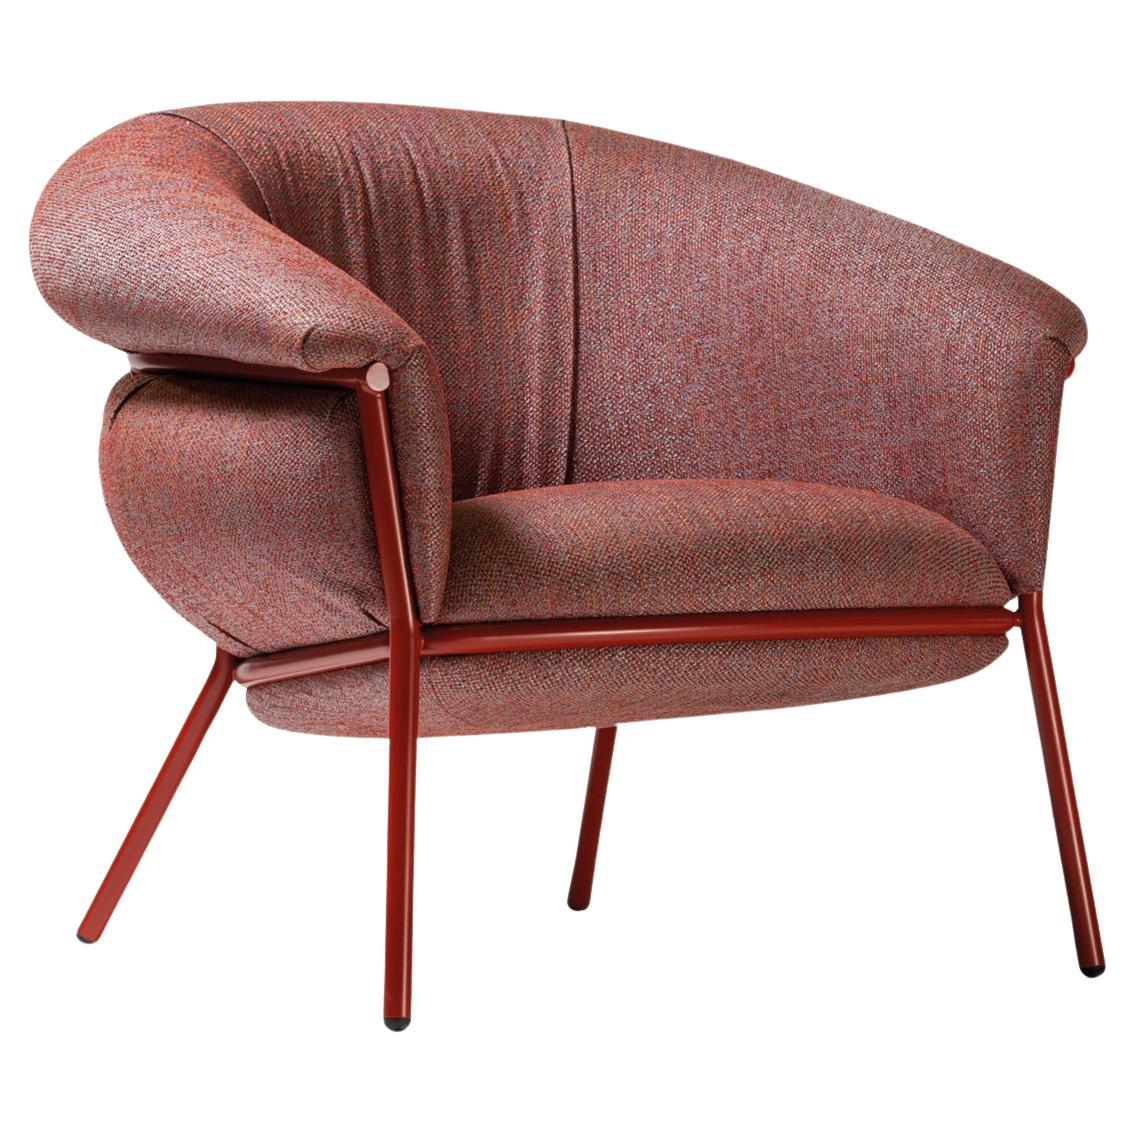 Grasso Sessel von Stephen Burks, rot gepolsterte Polsterung mit roter Metallgestelle